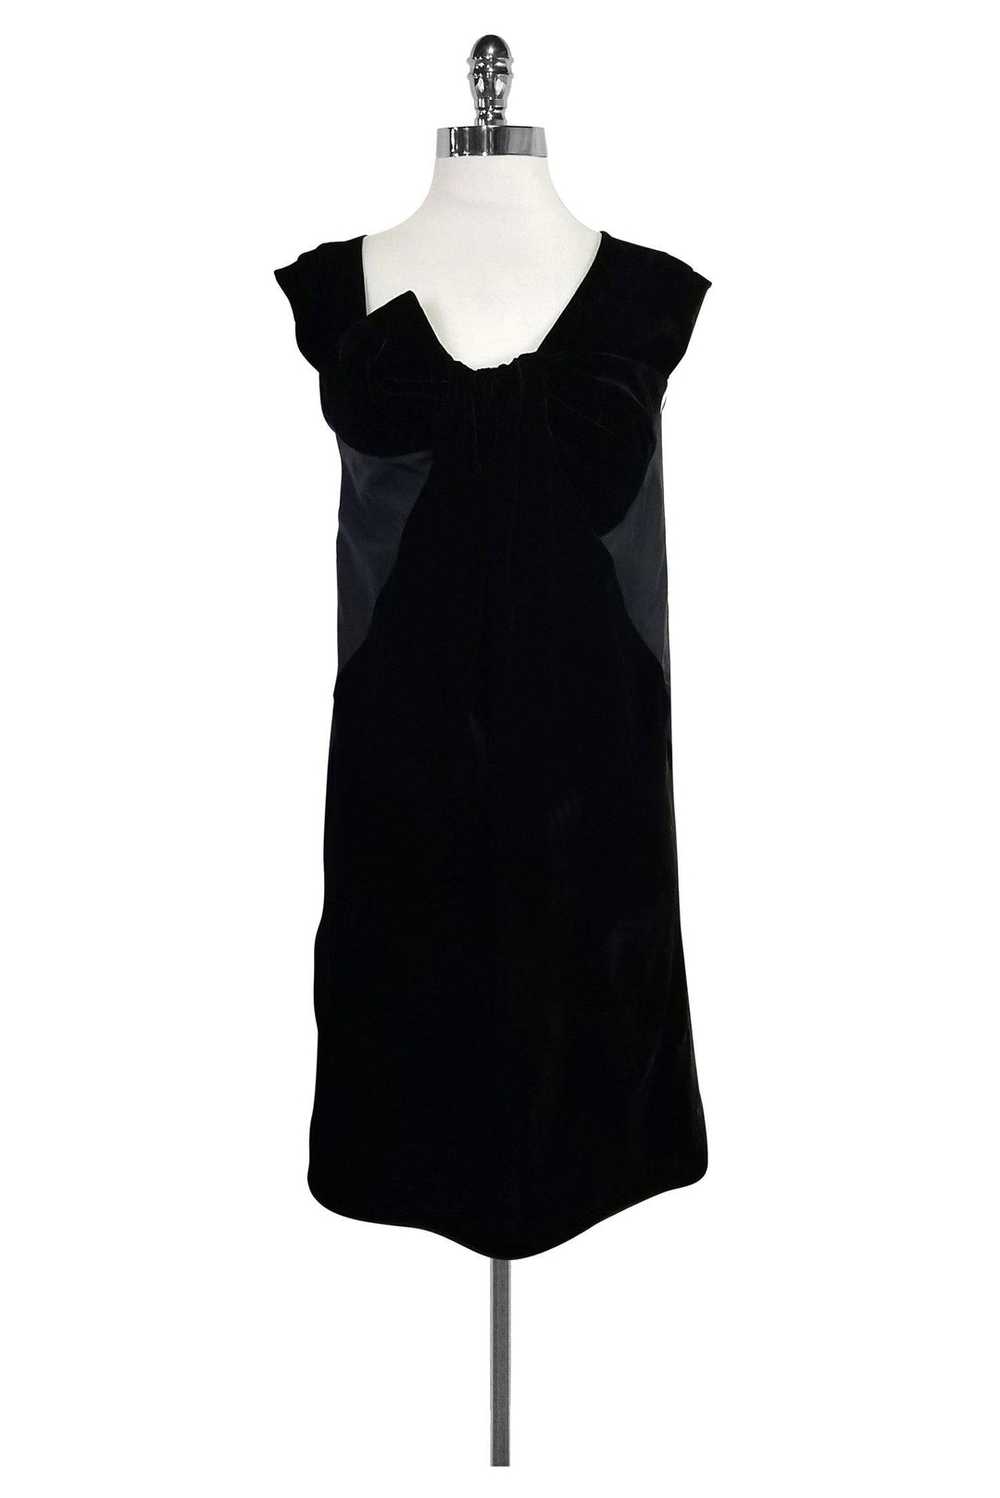 Miu Miu - Black Silk & Velvet Dress Sz 4 - image 1